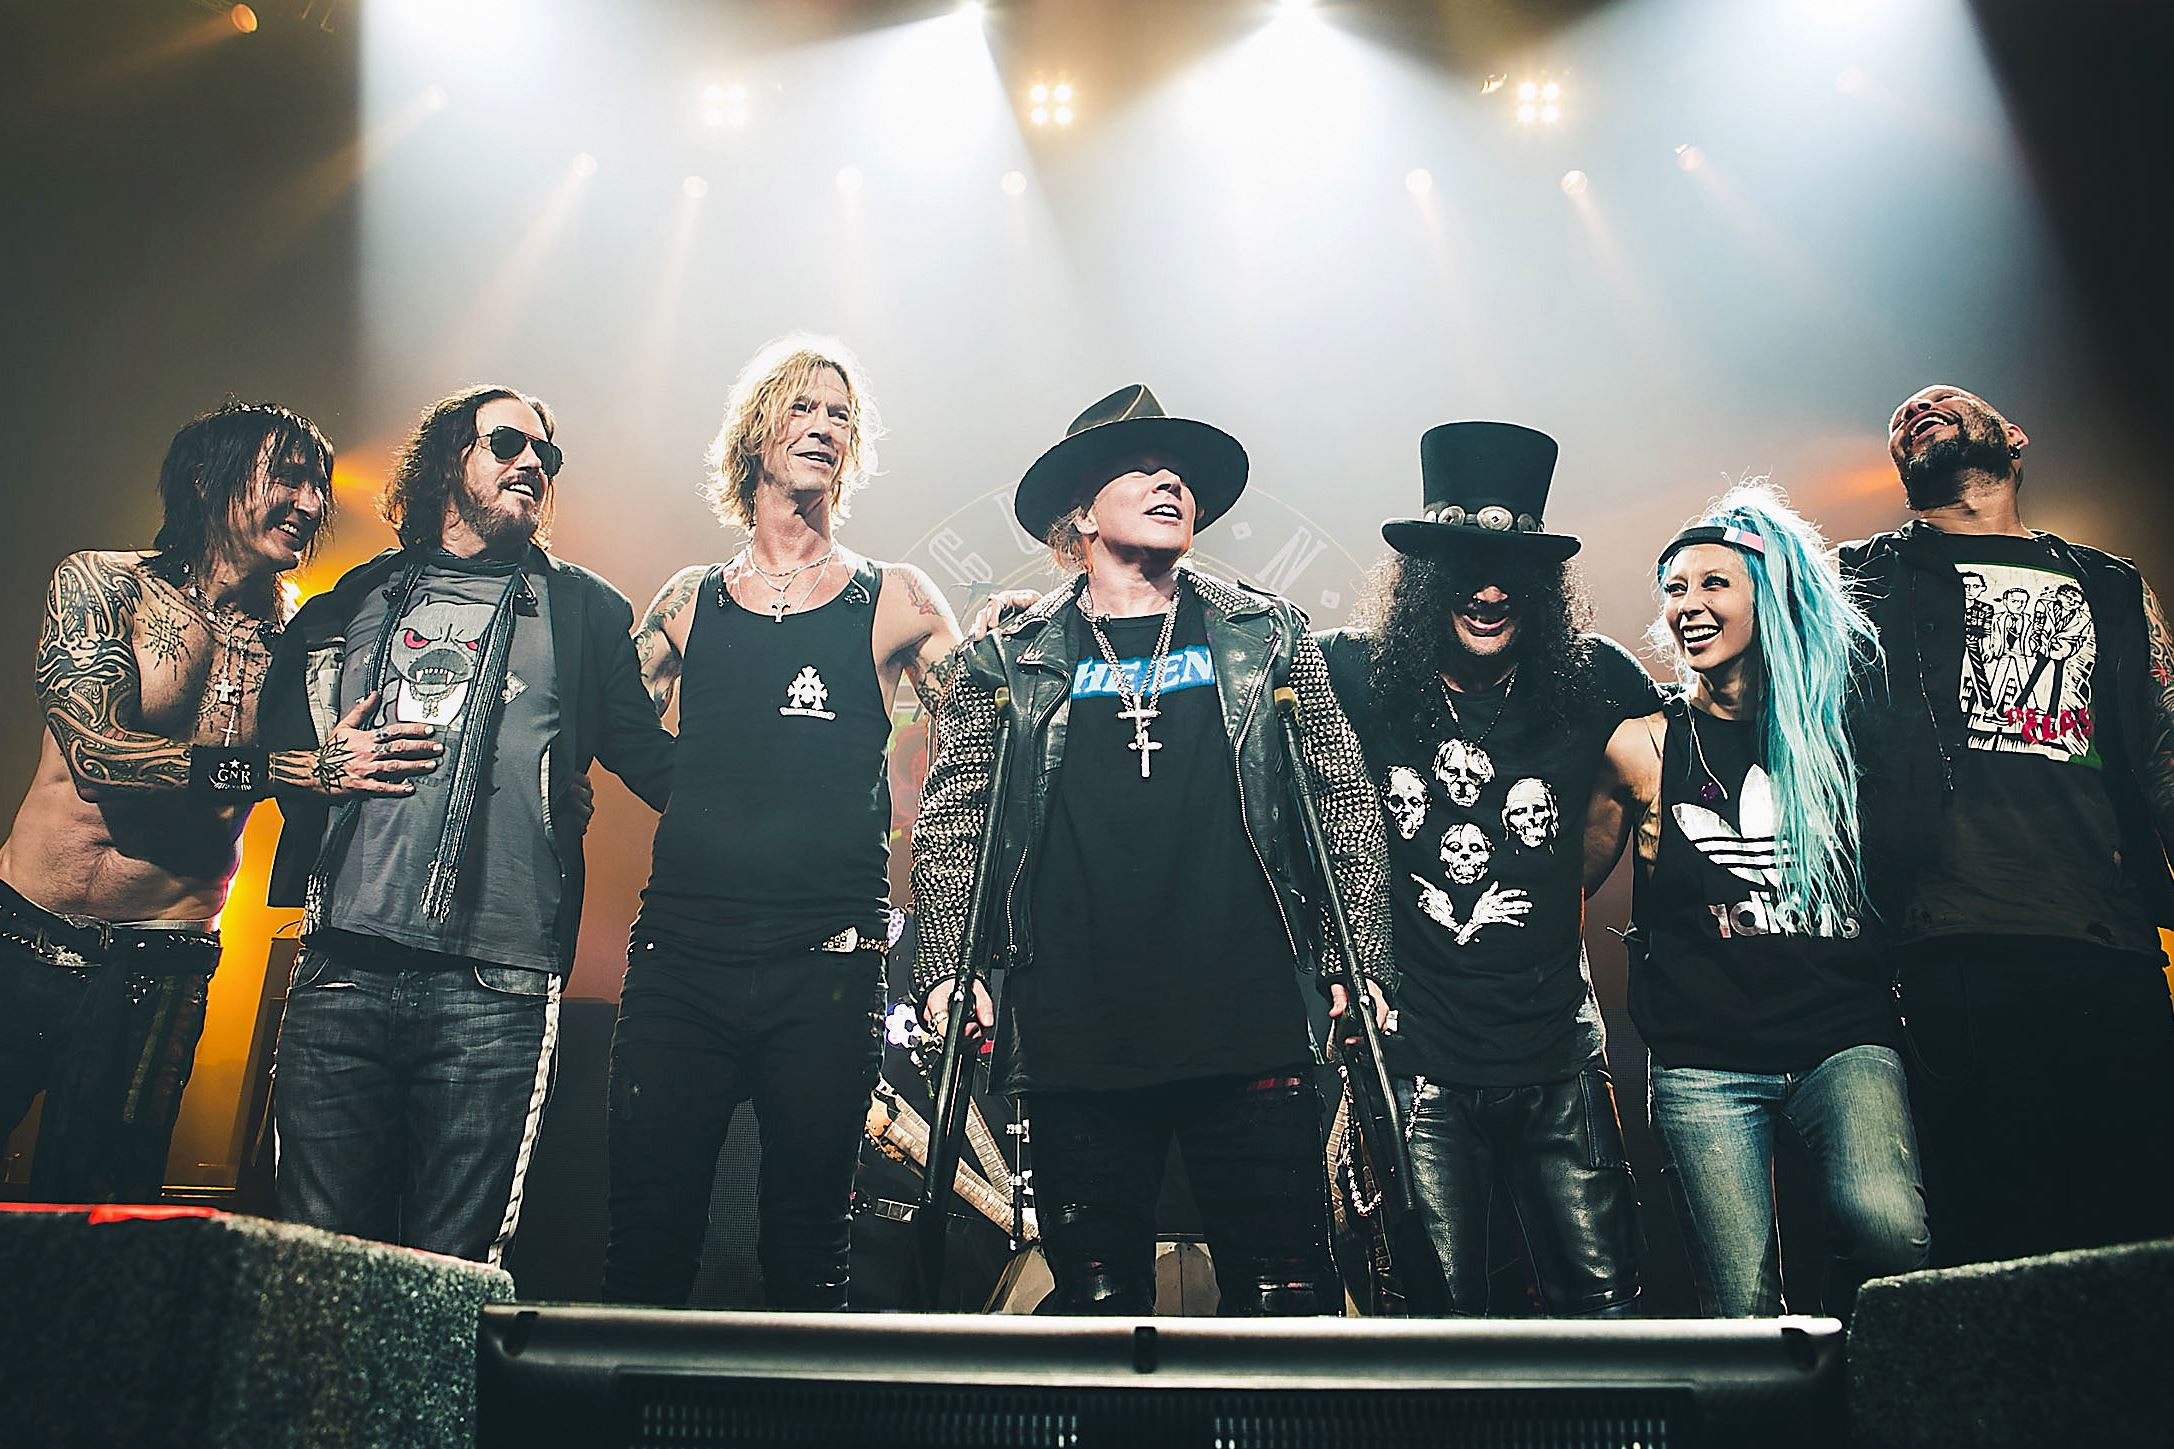 Ve como Guns N’ Roses interpreta “Shadow Of Your Love” por primera vez en 30 años